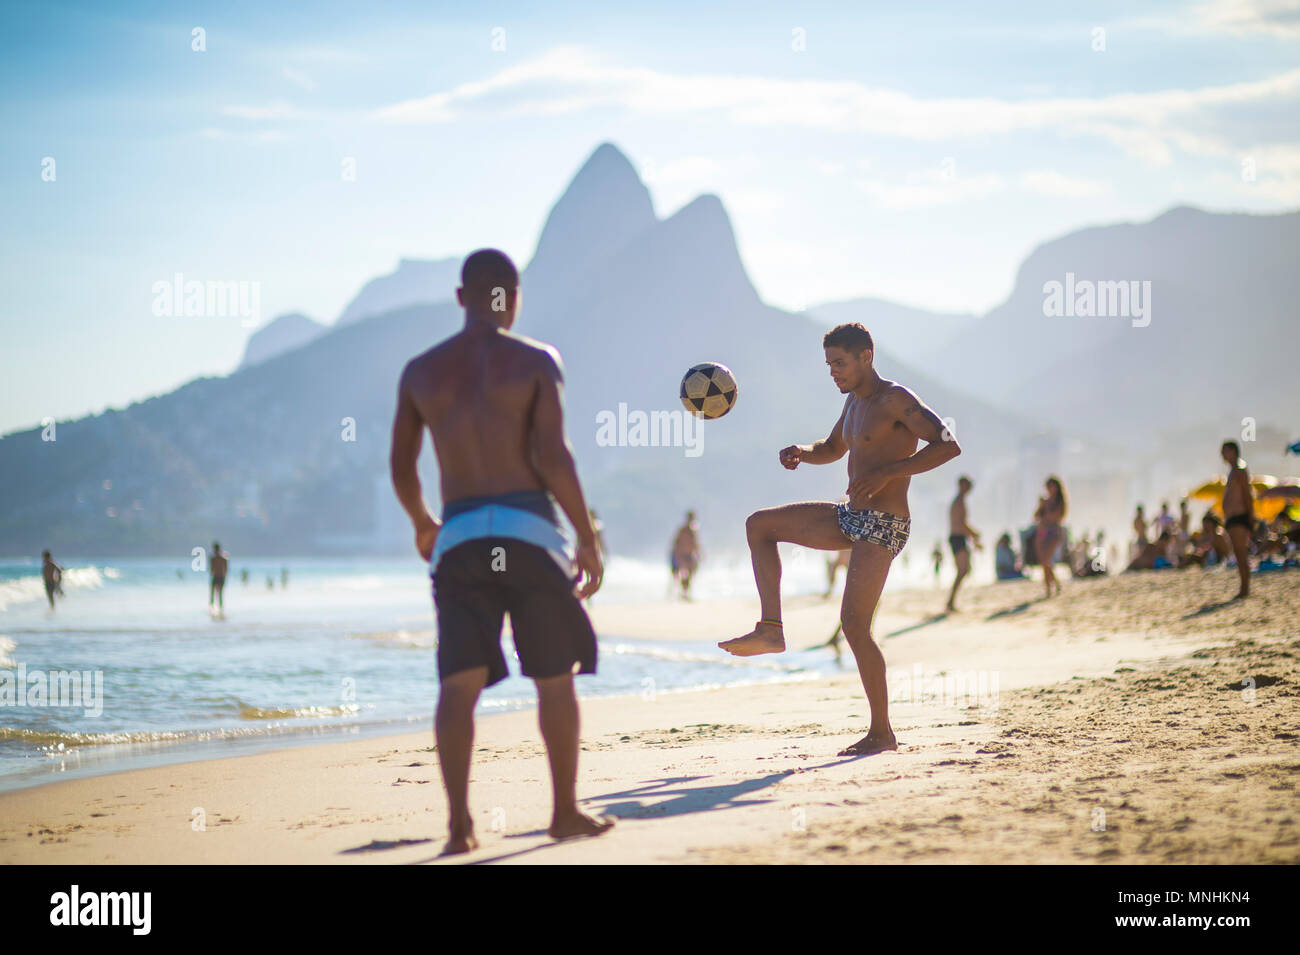 RIO DE JANEIRO, BRAZIL - CIRCA MARCH 2018: Young Brazilians play a game of beach football keepy-uppy 'altinho' on the shore of Ipanema Beach. Stock Photo